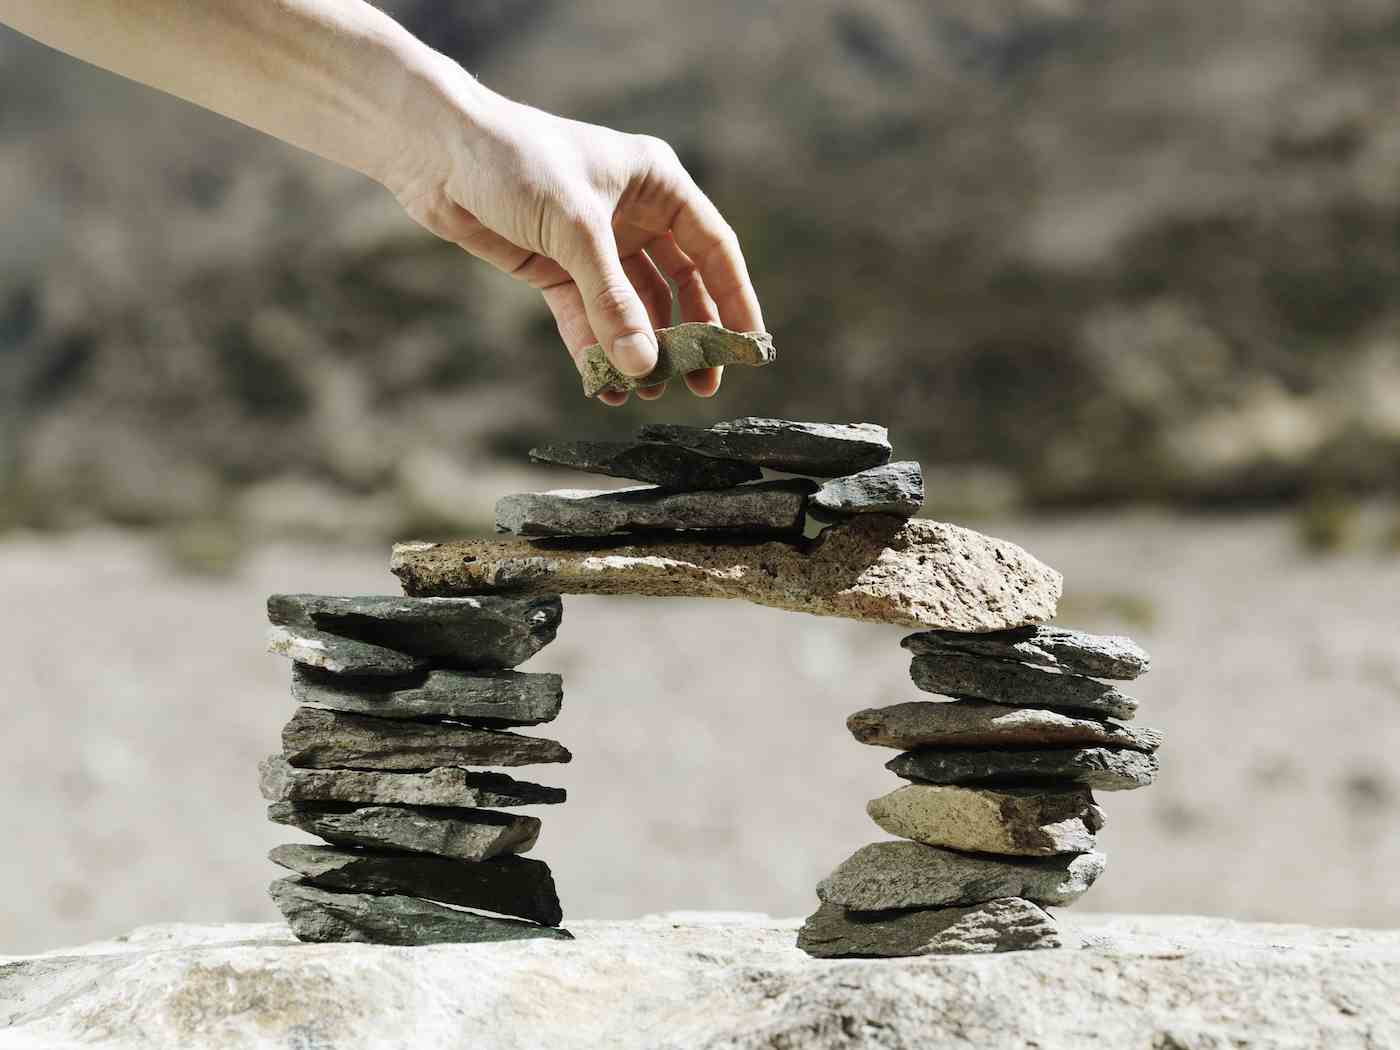 Der letzte Stein wird von Hand auf eine balancierende Miniatur-Modellbrücke aus kleinen flachen Steinen im Freien gelegt